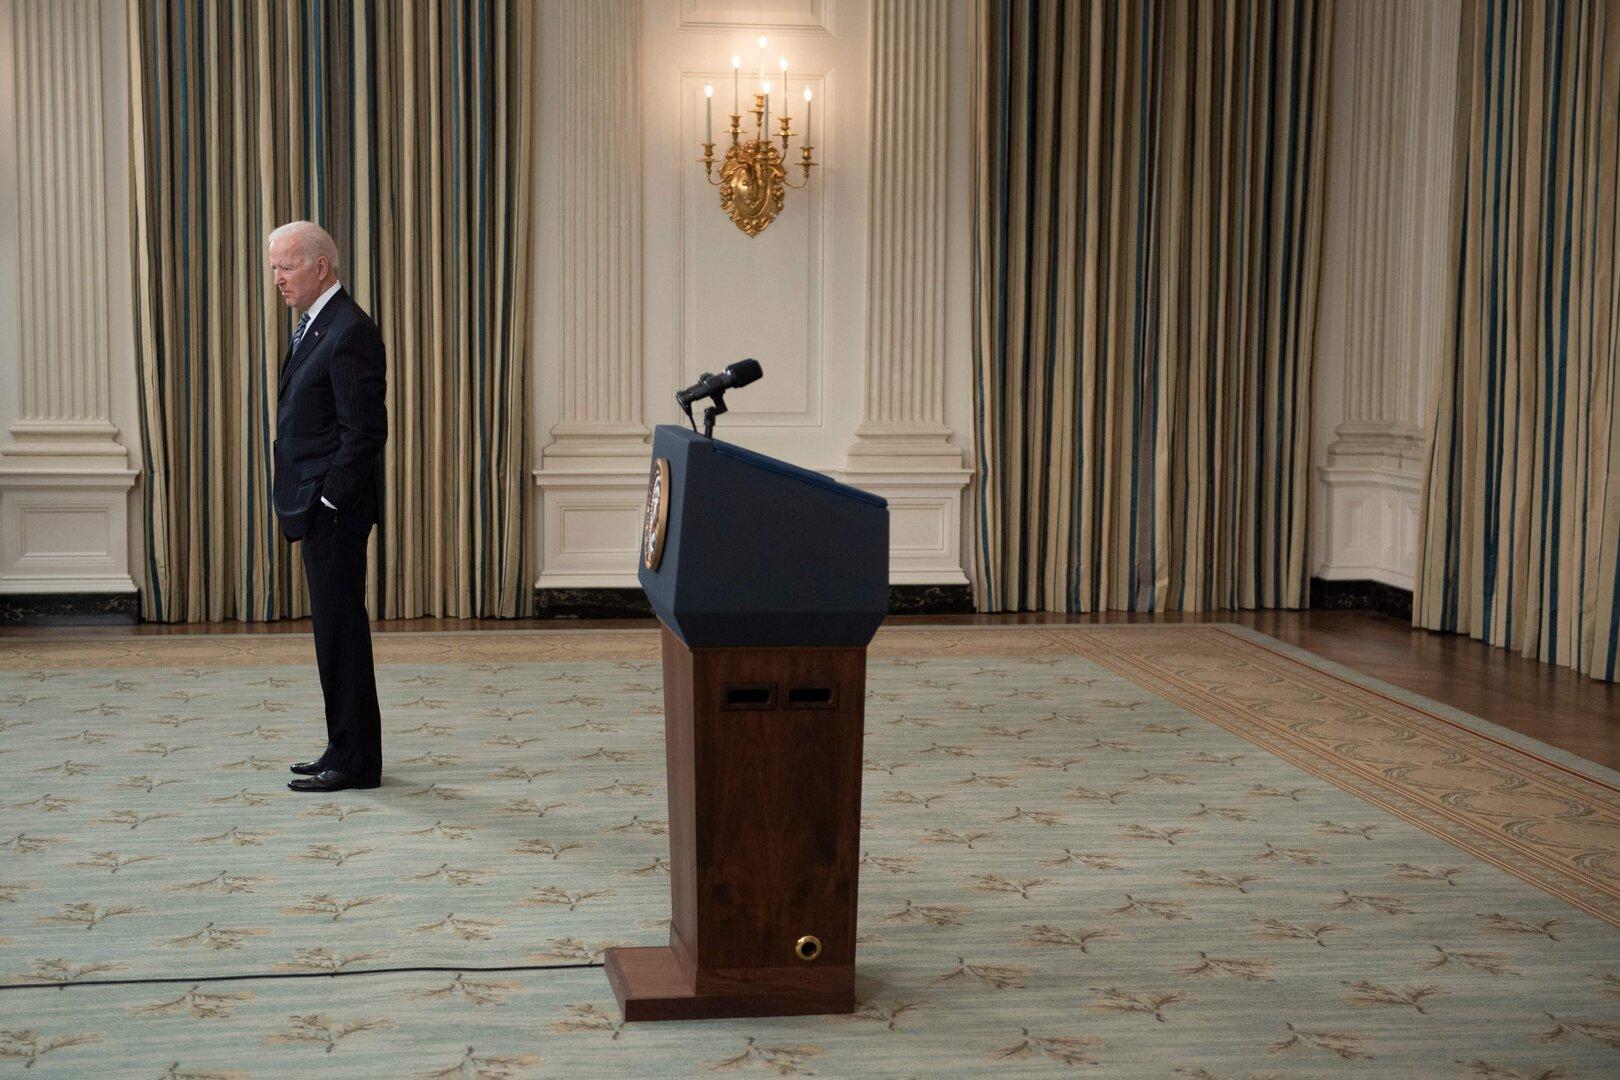 Rückzug in Isolation: Wie Biden und sein Team die Entscheidung trafen